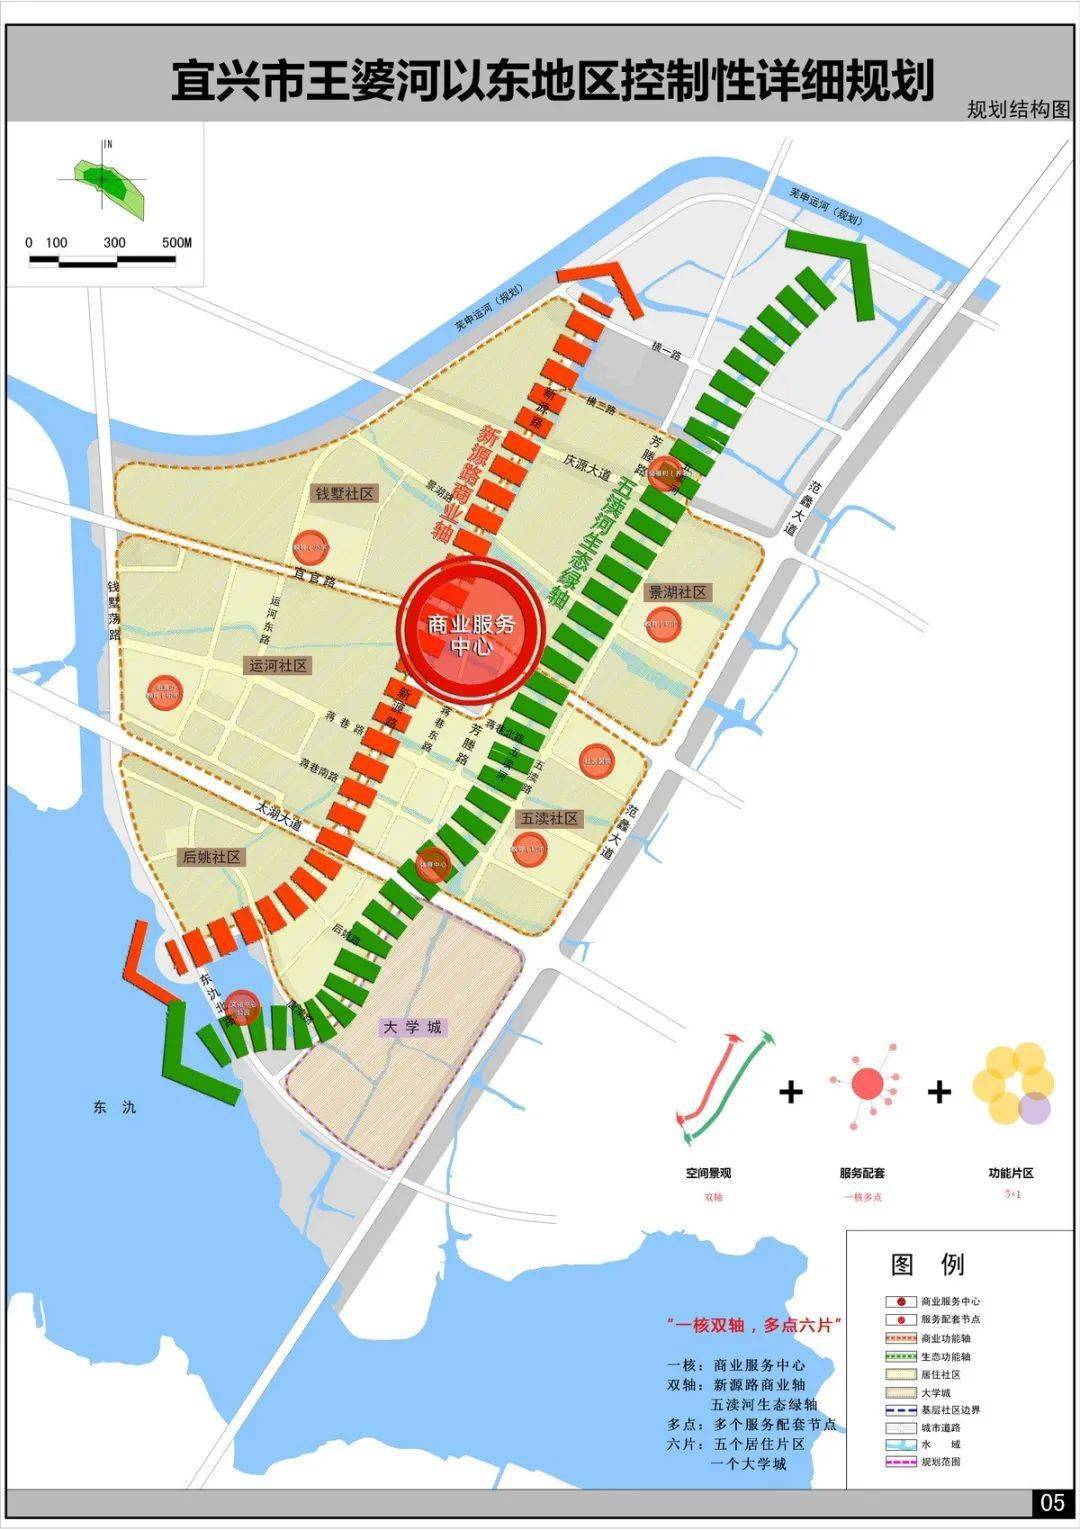 2018年,《宜兴市城市总体规划(2017